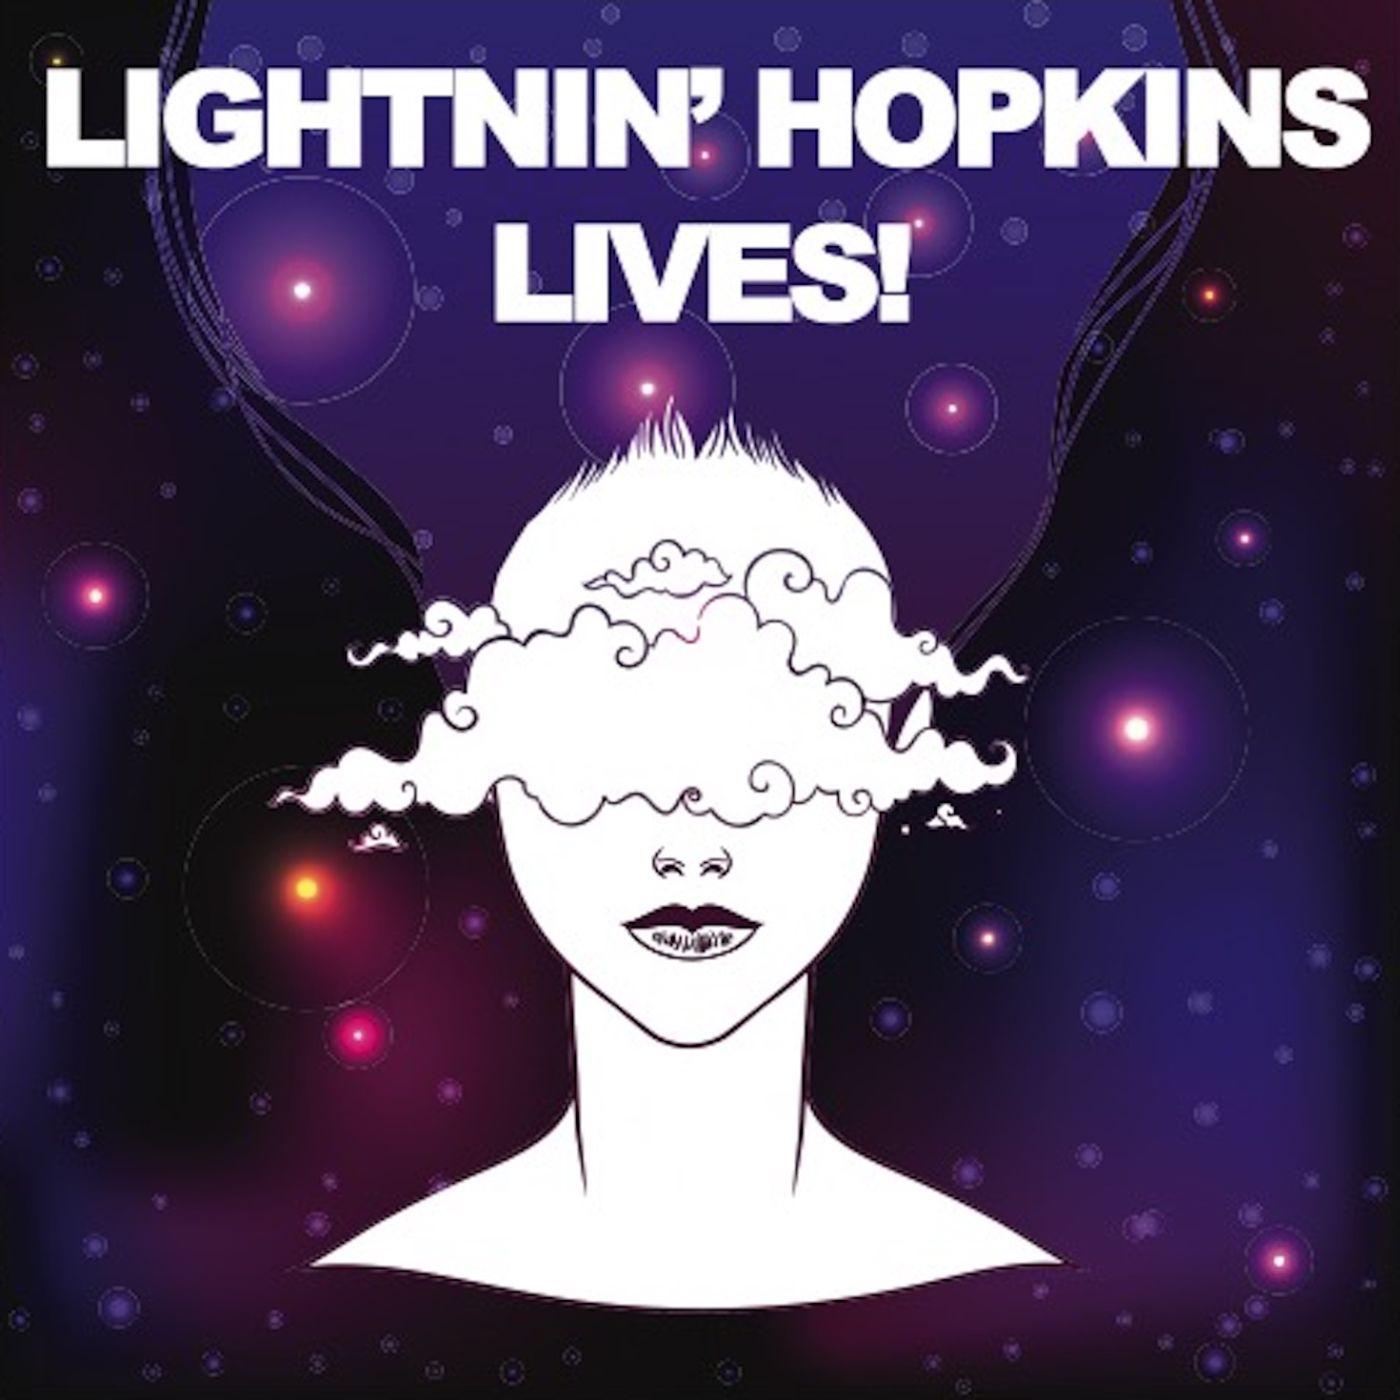 Lightnin' Hopkins Lives!